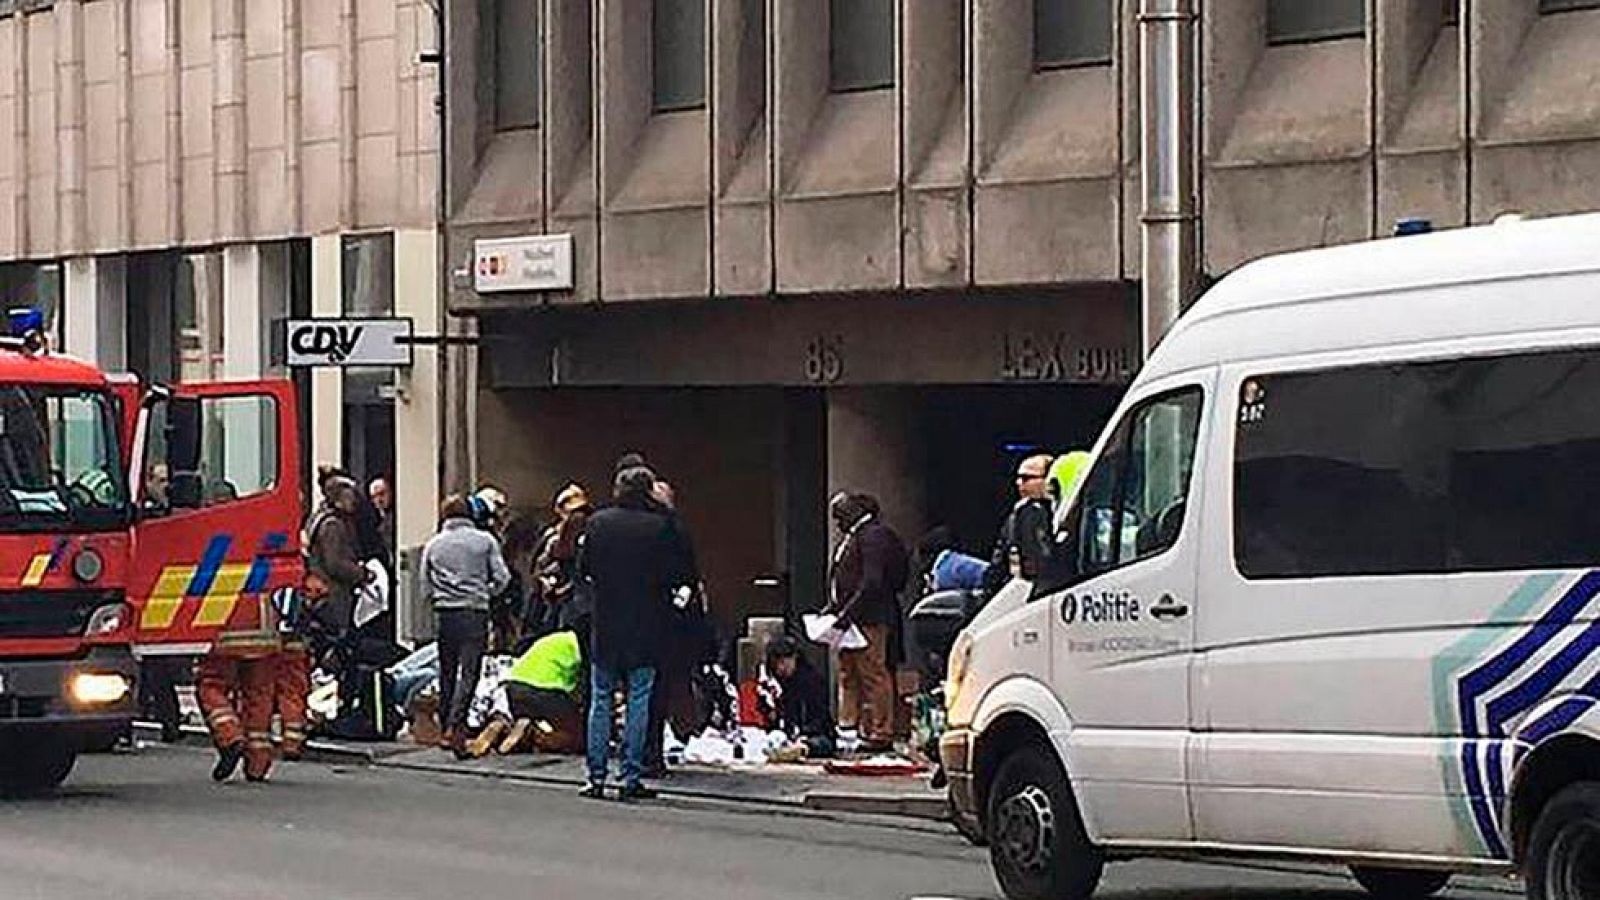 Atentados en Bruselas: Testimonio de un joven español en Bruselas: "Nos hemos bajado una estación antes de Maelbeek"